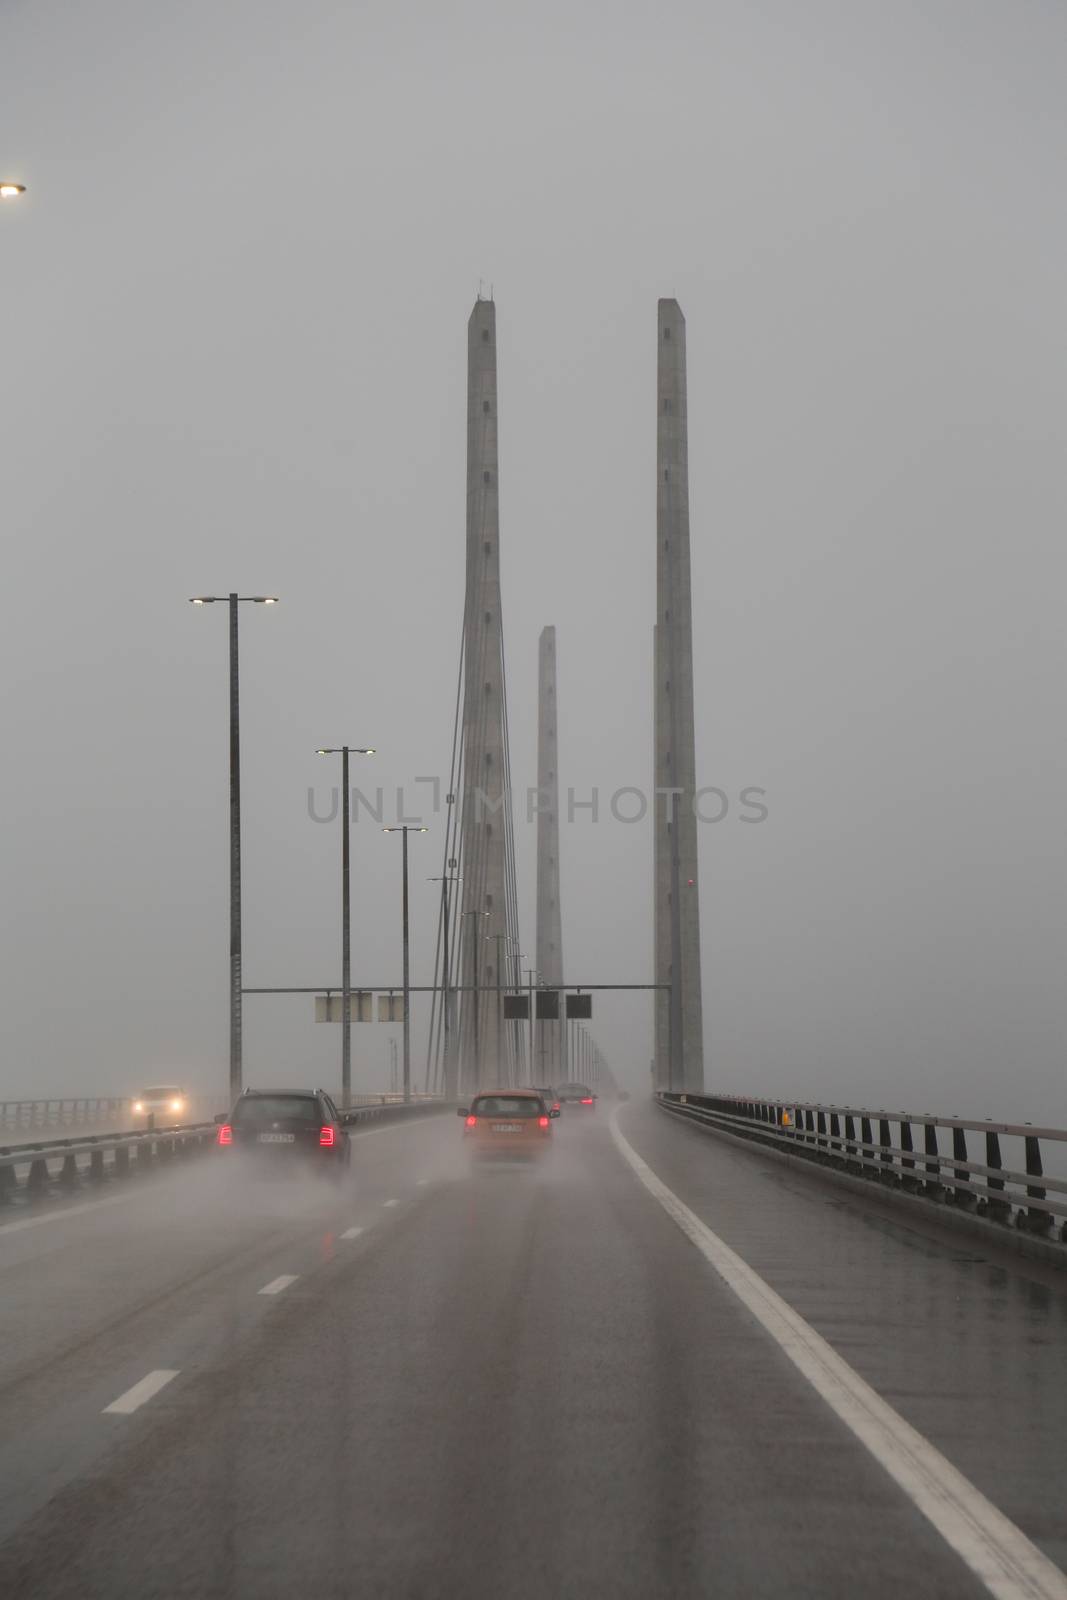 The Oresund Bridge by Kartouchken